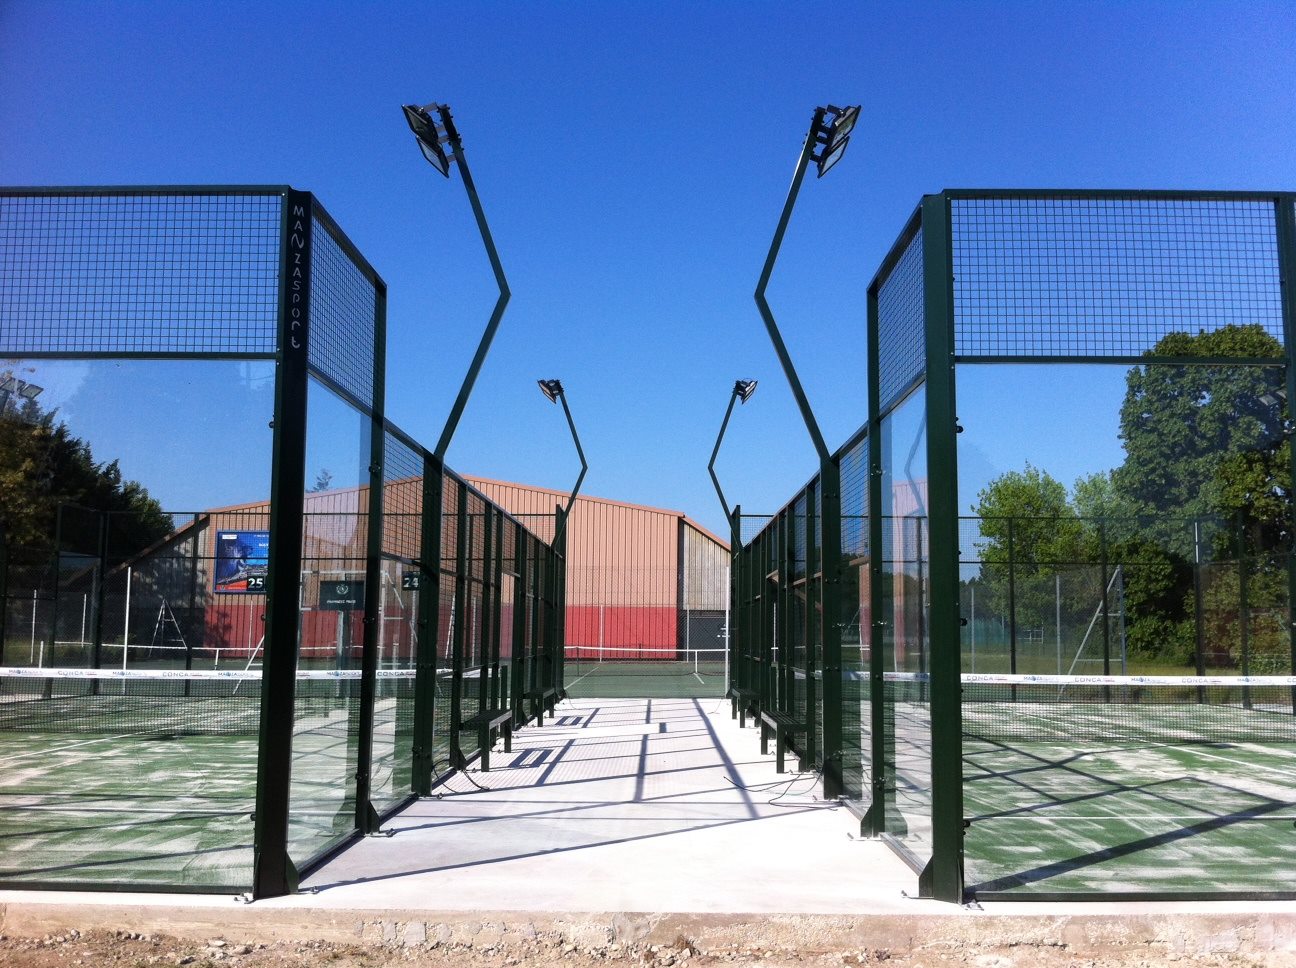 Tennis Club de Lyon biedt 2 paddle-banen